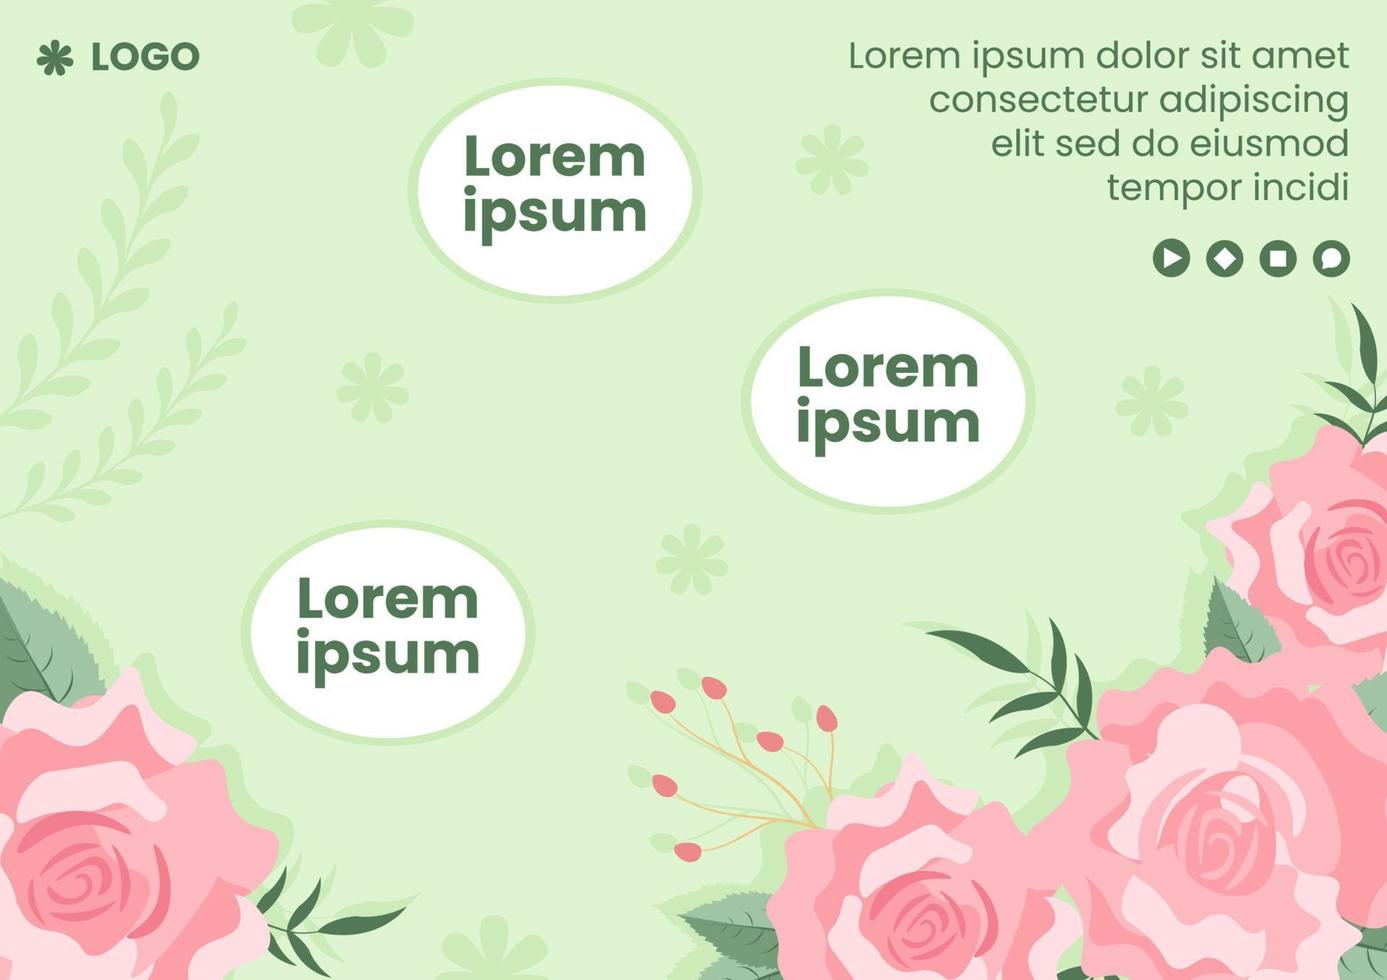 venta de primavera con flor flores plantilla de folleto diseño plano ilustración editable de fondo cuadrado para redes sociales o tarjeta de felicitación vector